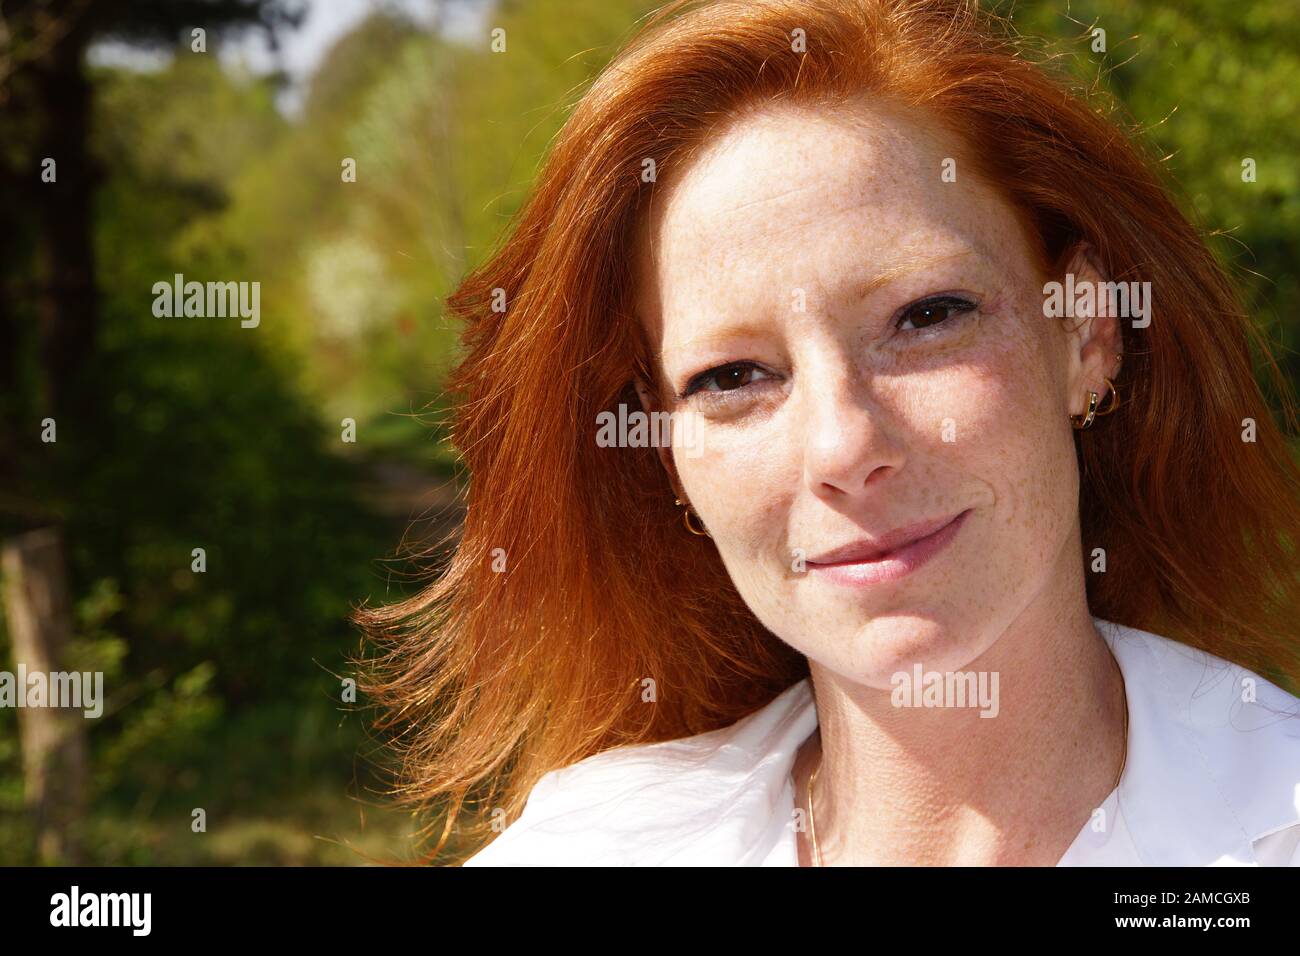 Portrait einer jungen rothaarigen Frau Stock Photo - Alamy